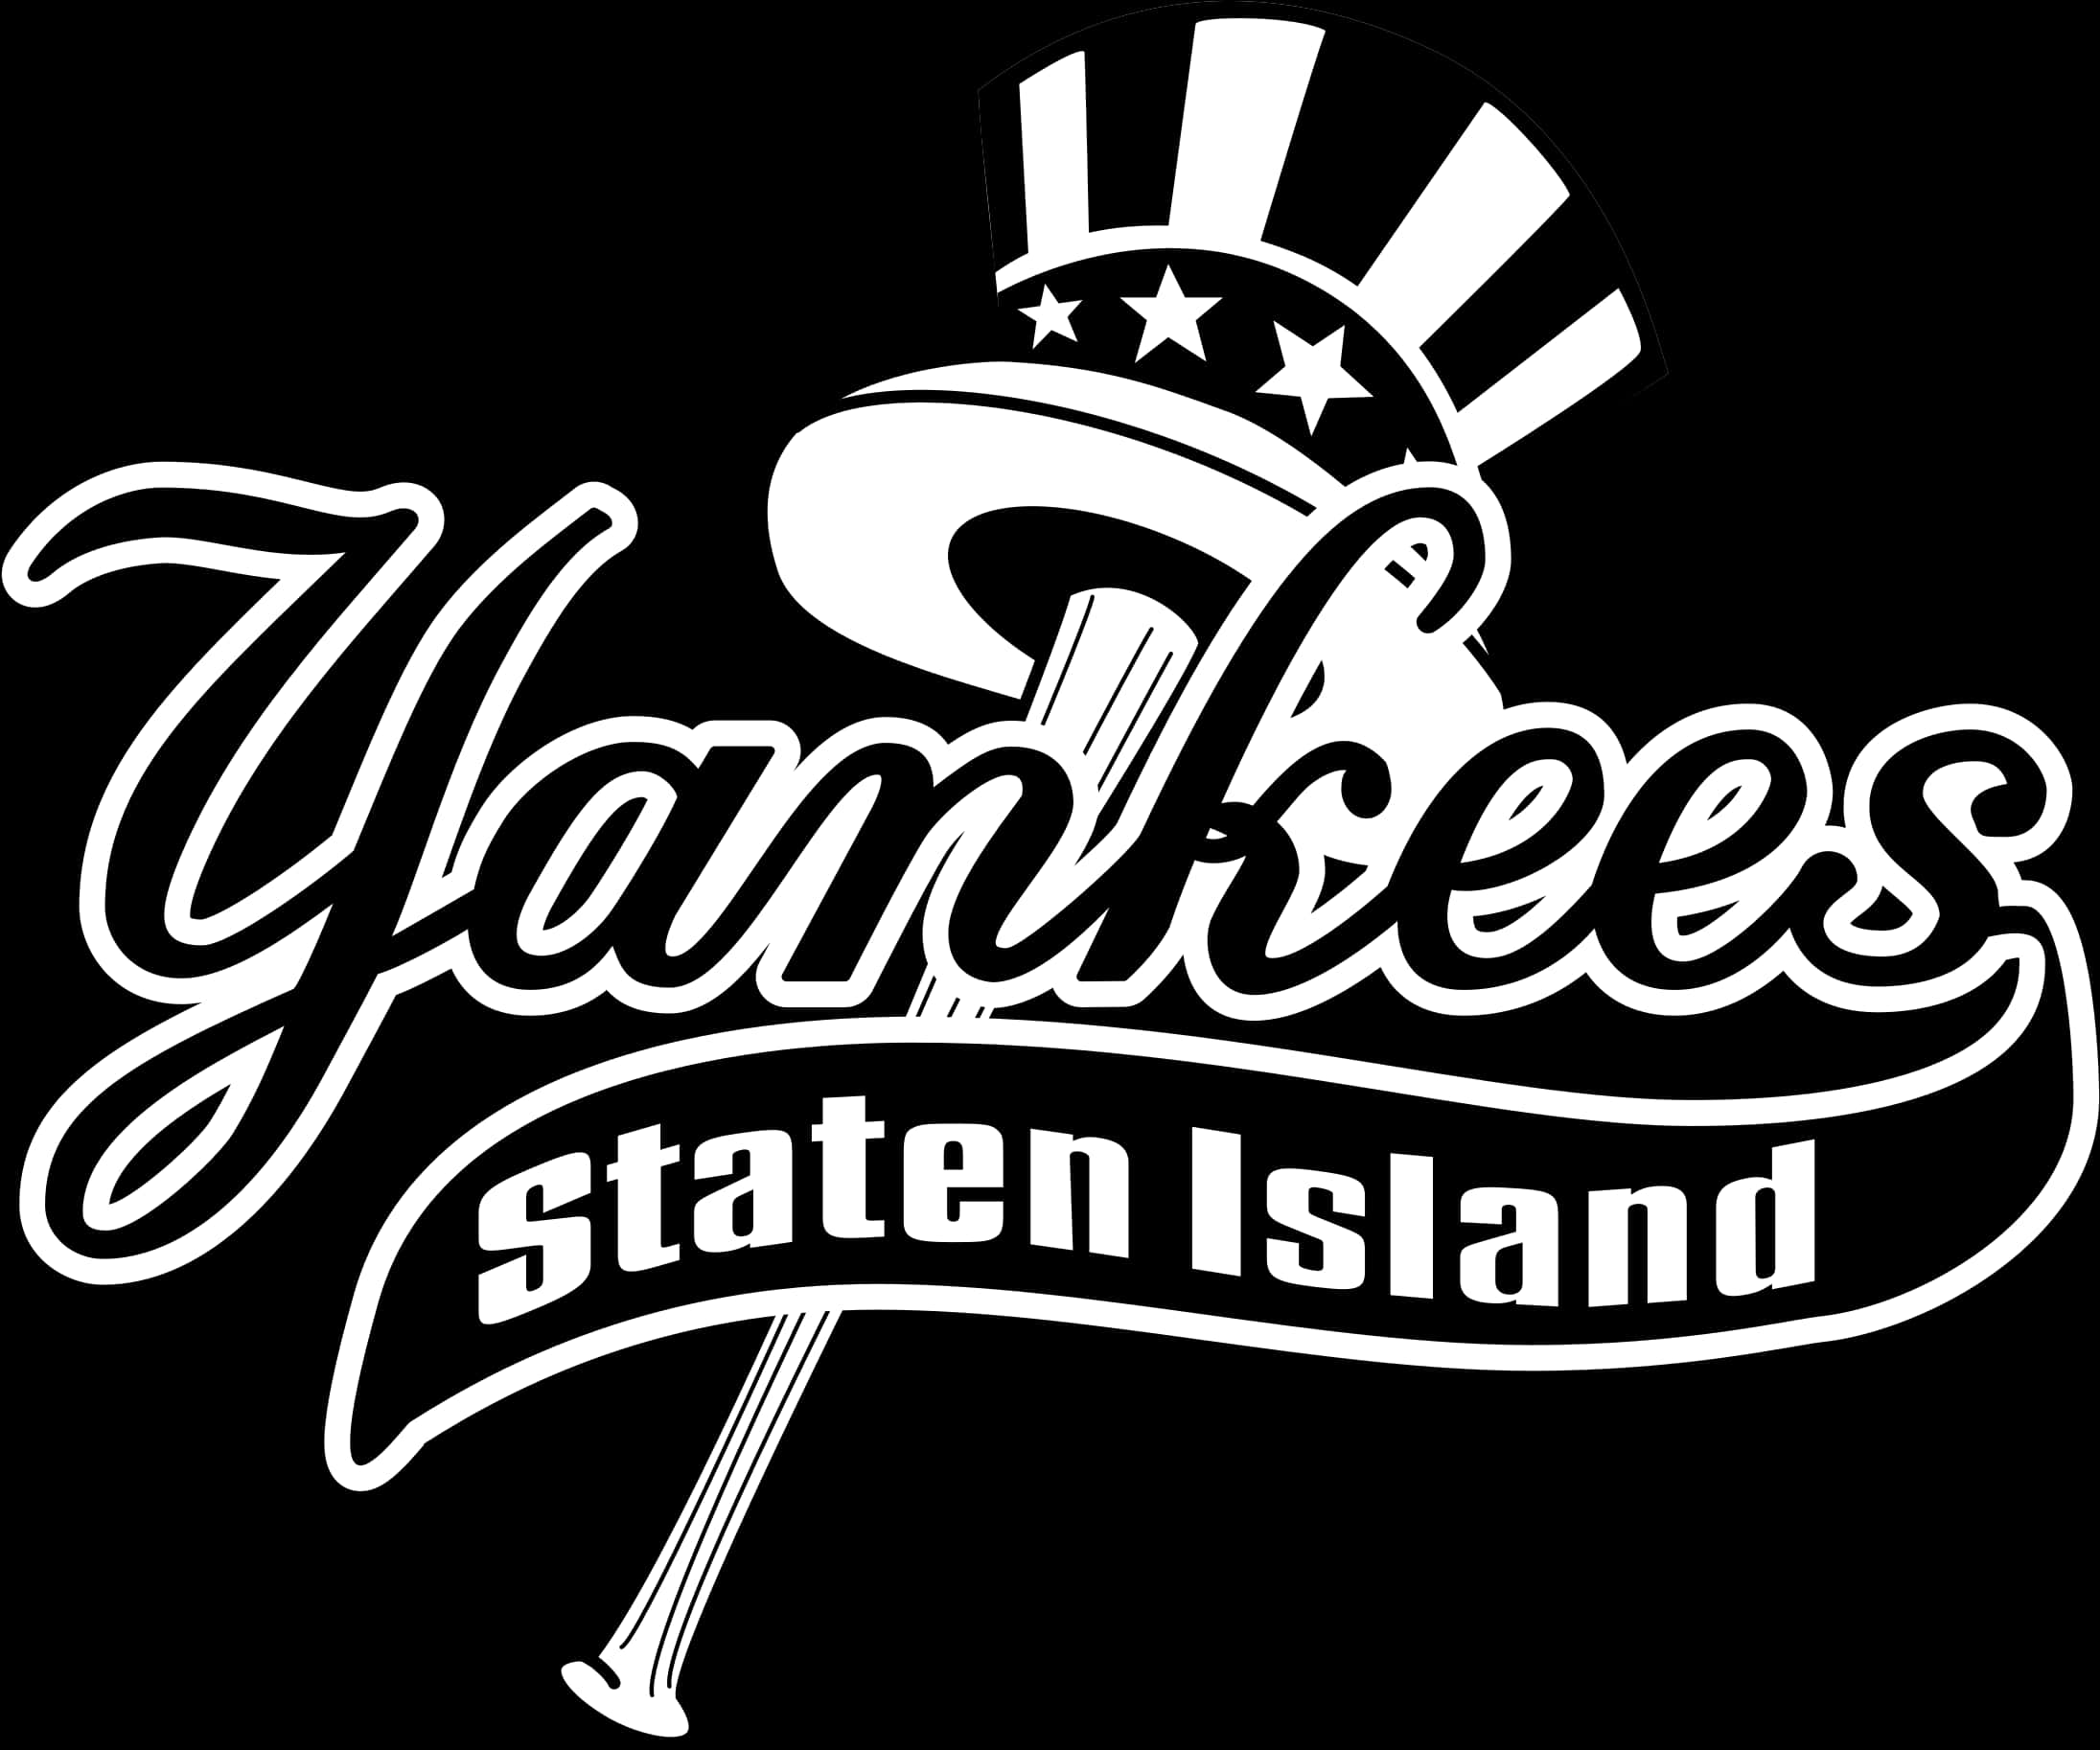 Yankees Staten Island Logo PNG image